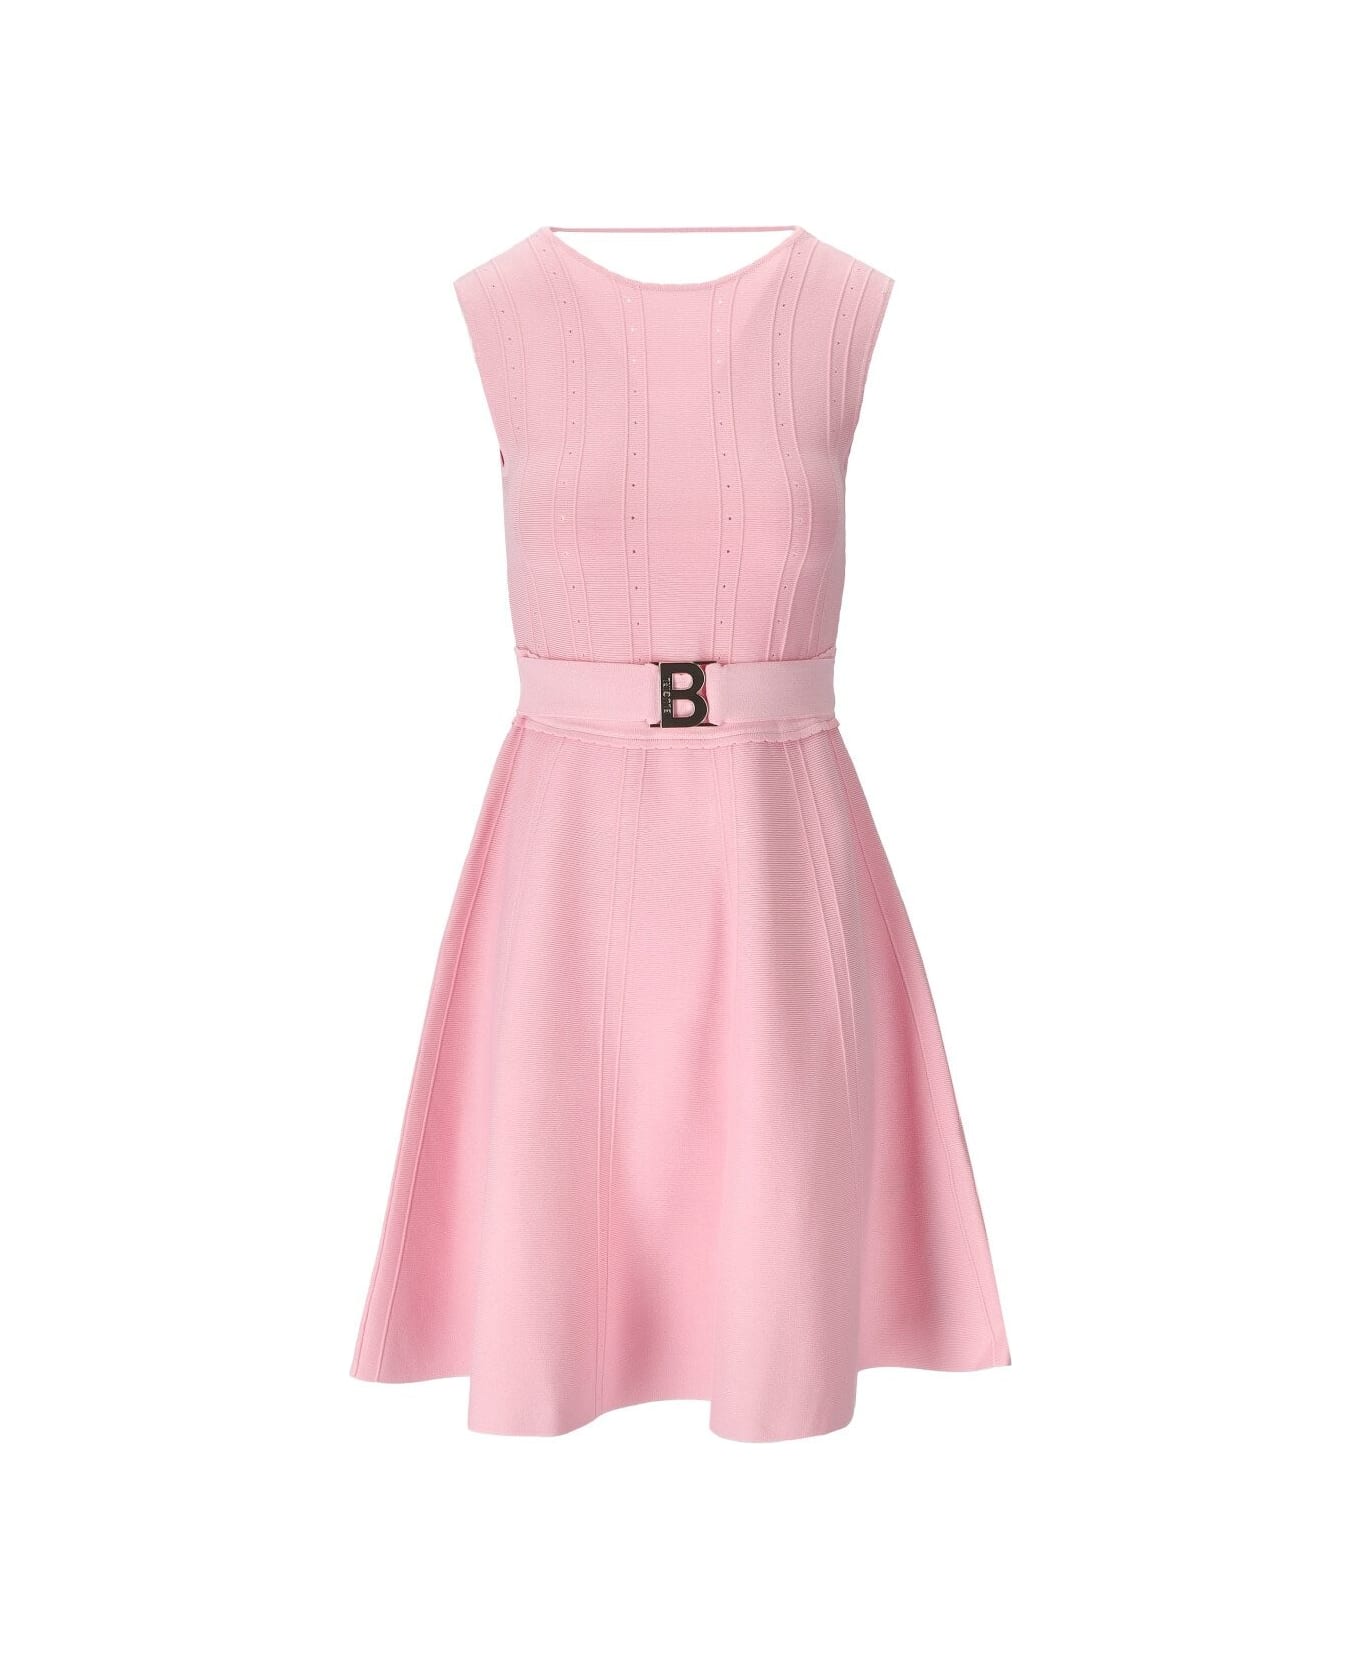 Blugirl Pink Knitted Dress Blugirl - PINK